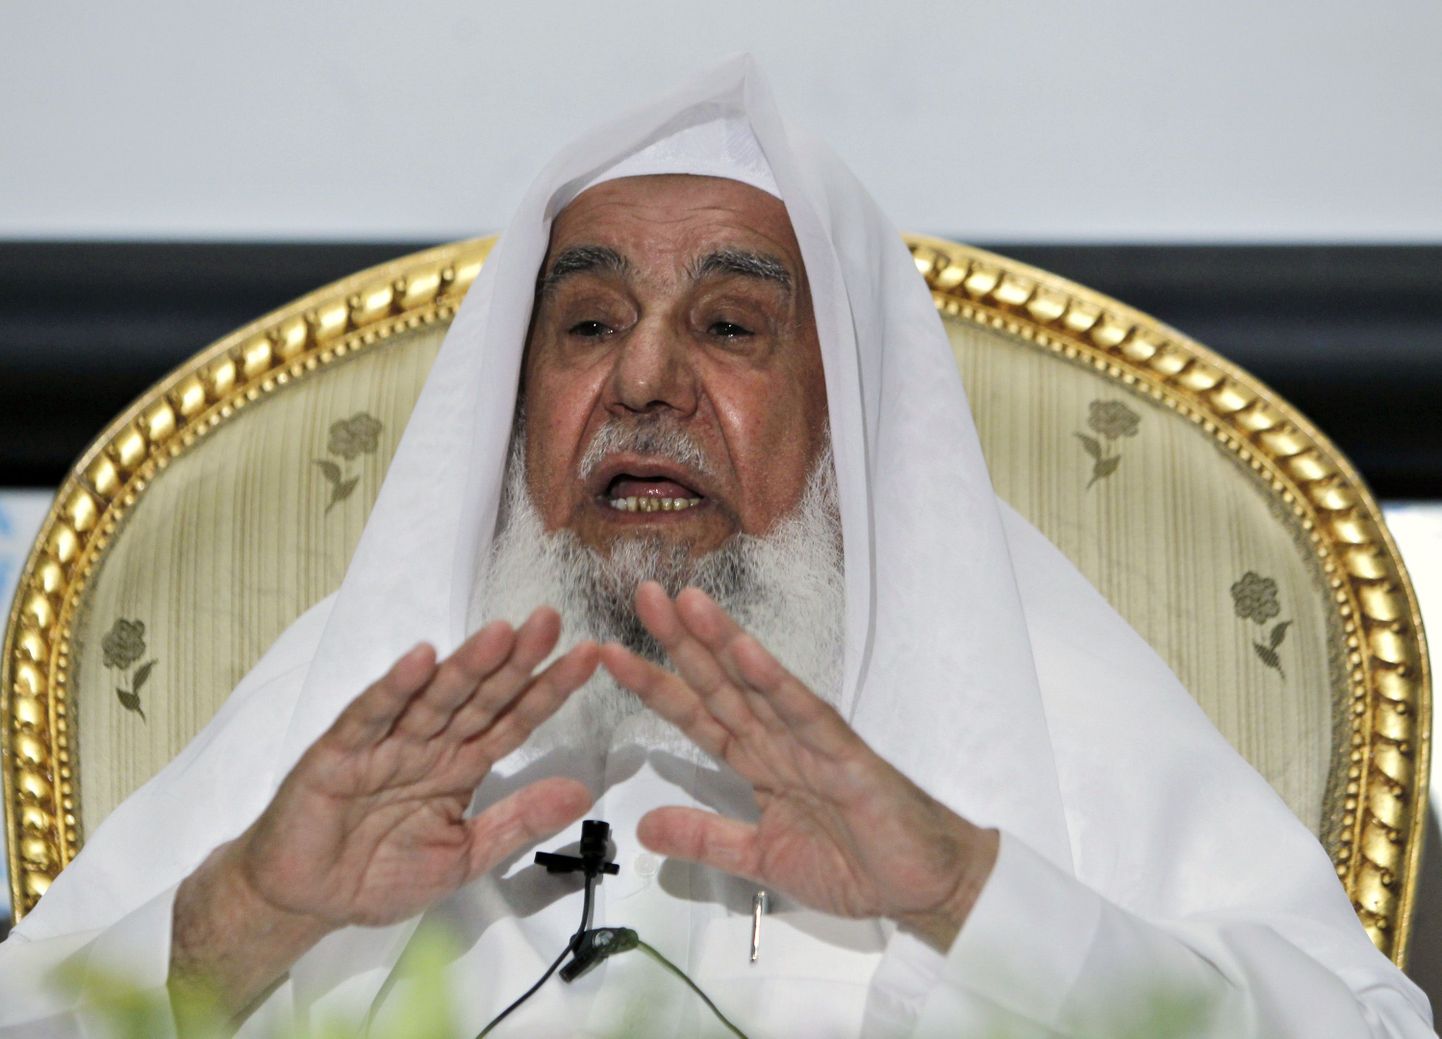 Sulaiman bin Abdul Aziz Al Rajhi on heategevusele annetanud kokku 5,7 miljardit dollarit.